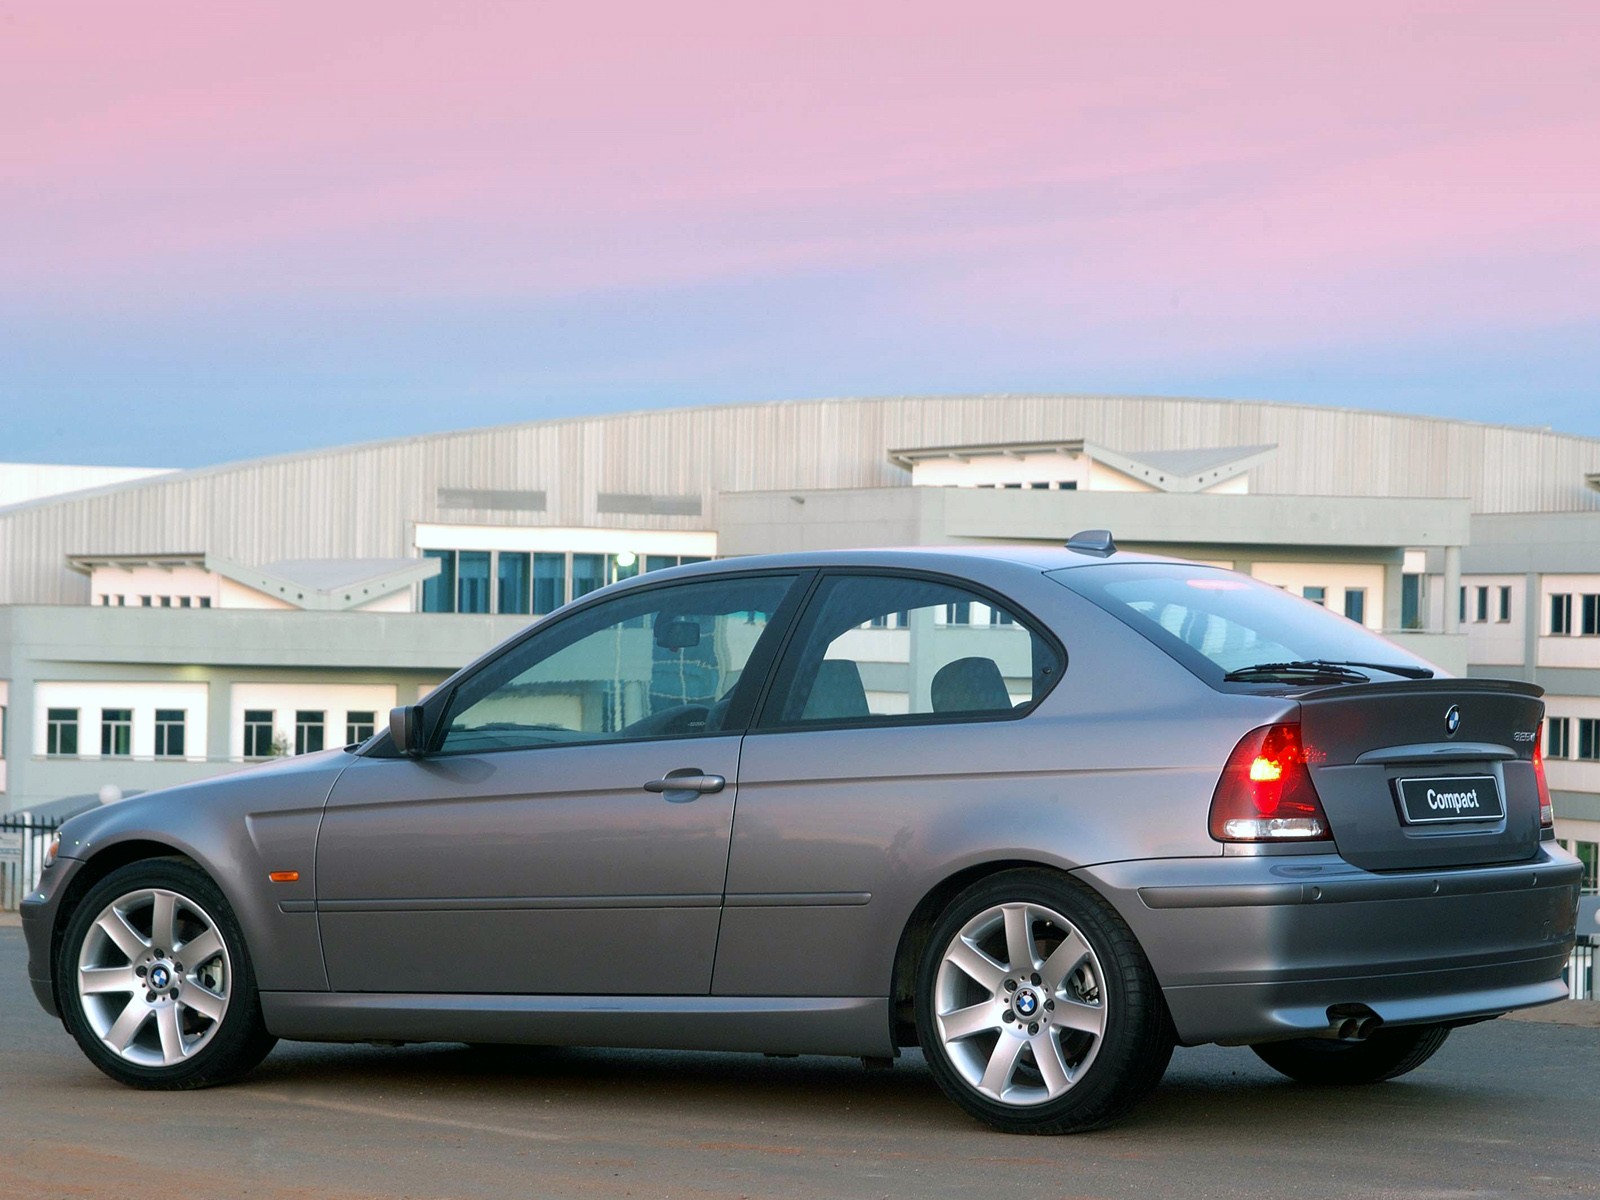 BMW 3 Series Compact (E46) 2001, 2002, 2003, 2004, 2005